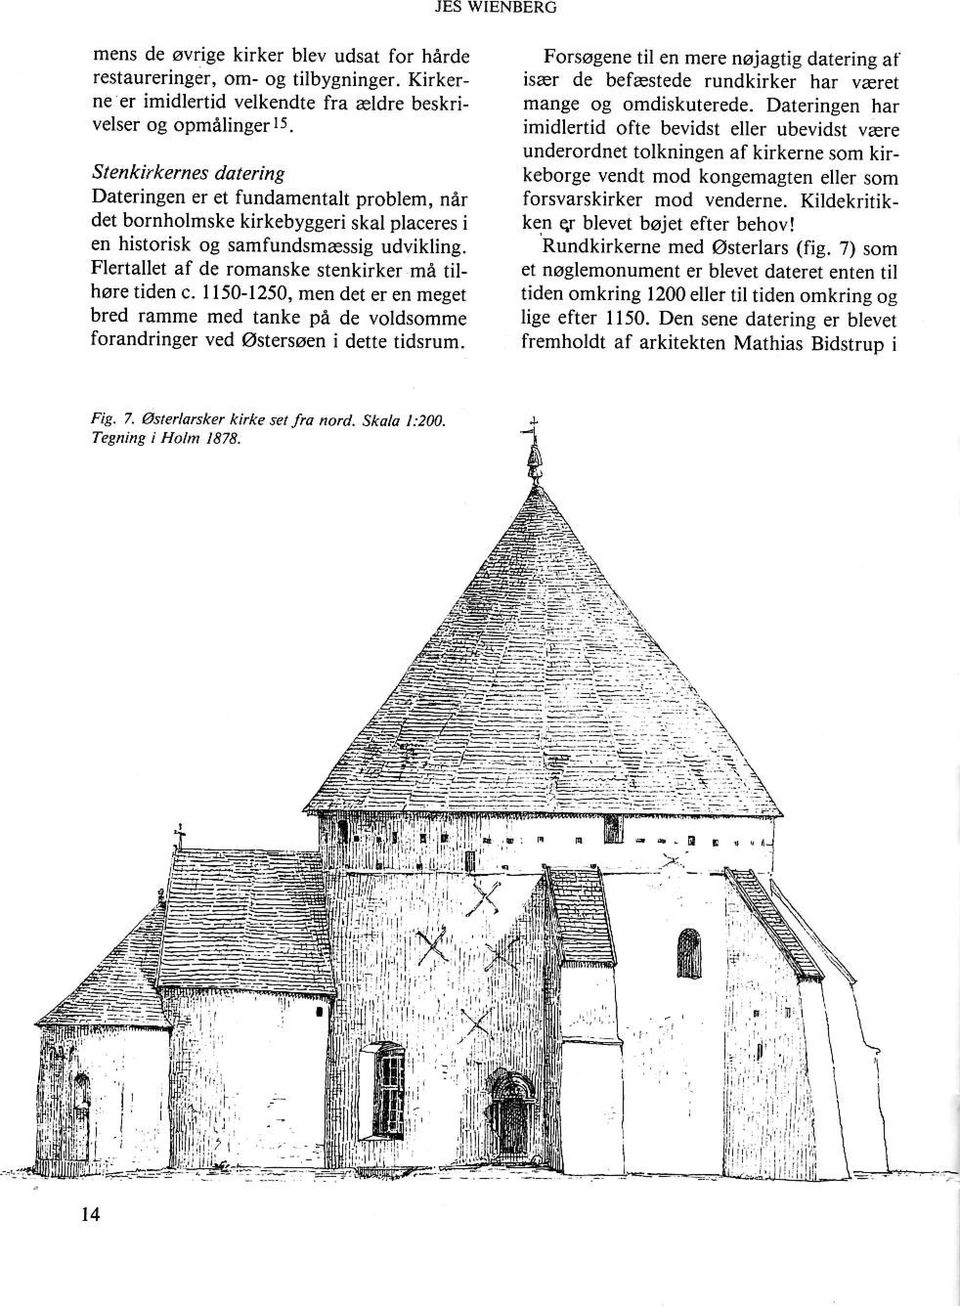 Flertallet af de romanske stenkirker må tilhøre tiden c. 1150-1250, men det eren meget bred ramme med tanke på de voldsomme forandringer ved østersøen i dette tidsrum.